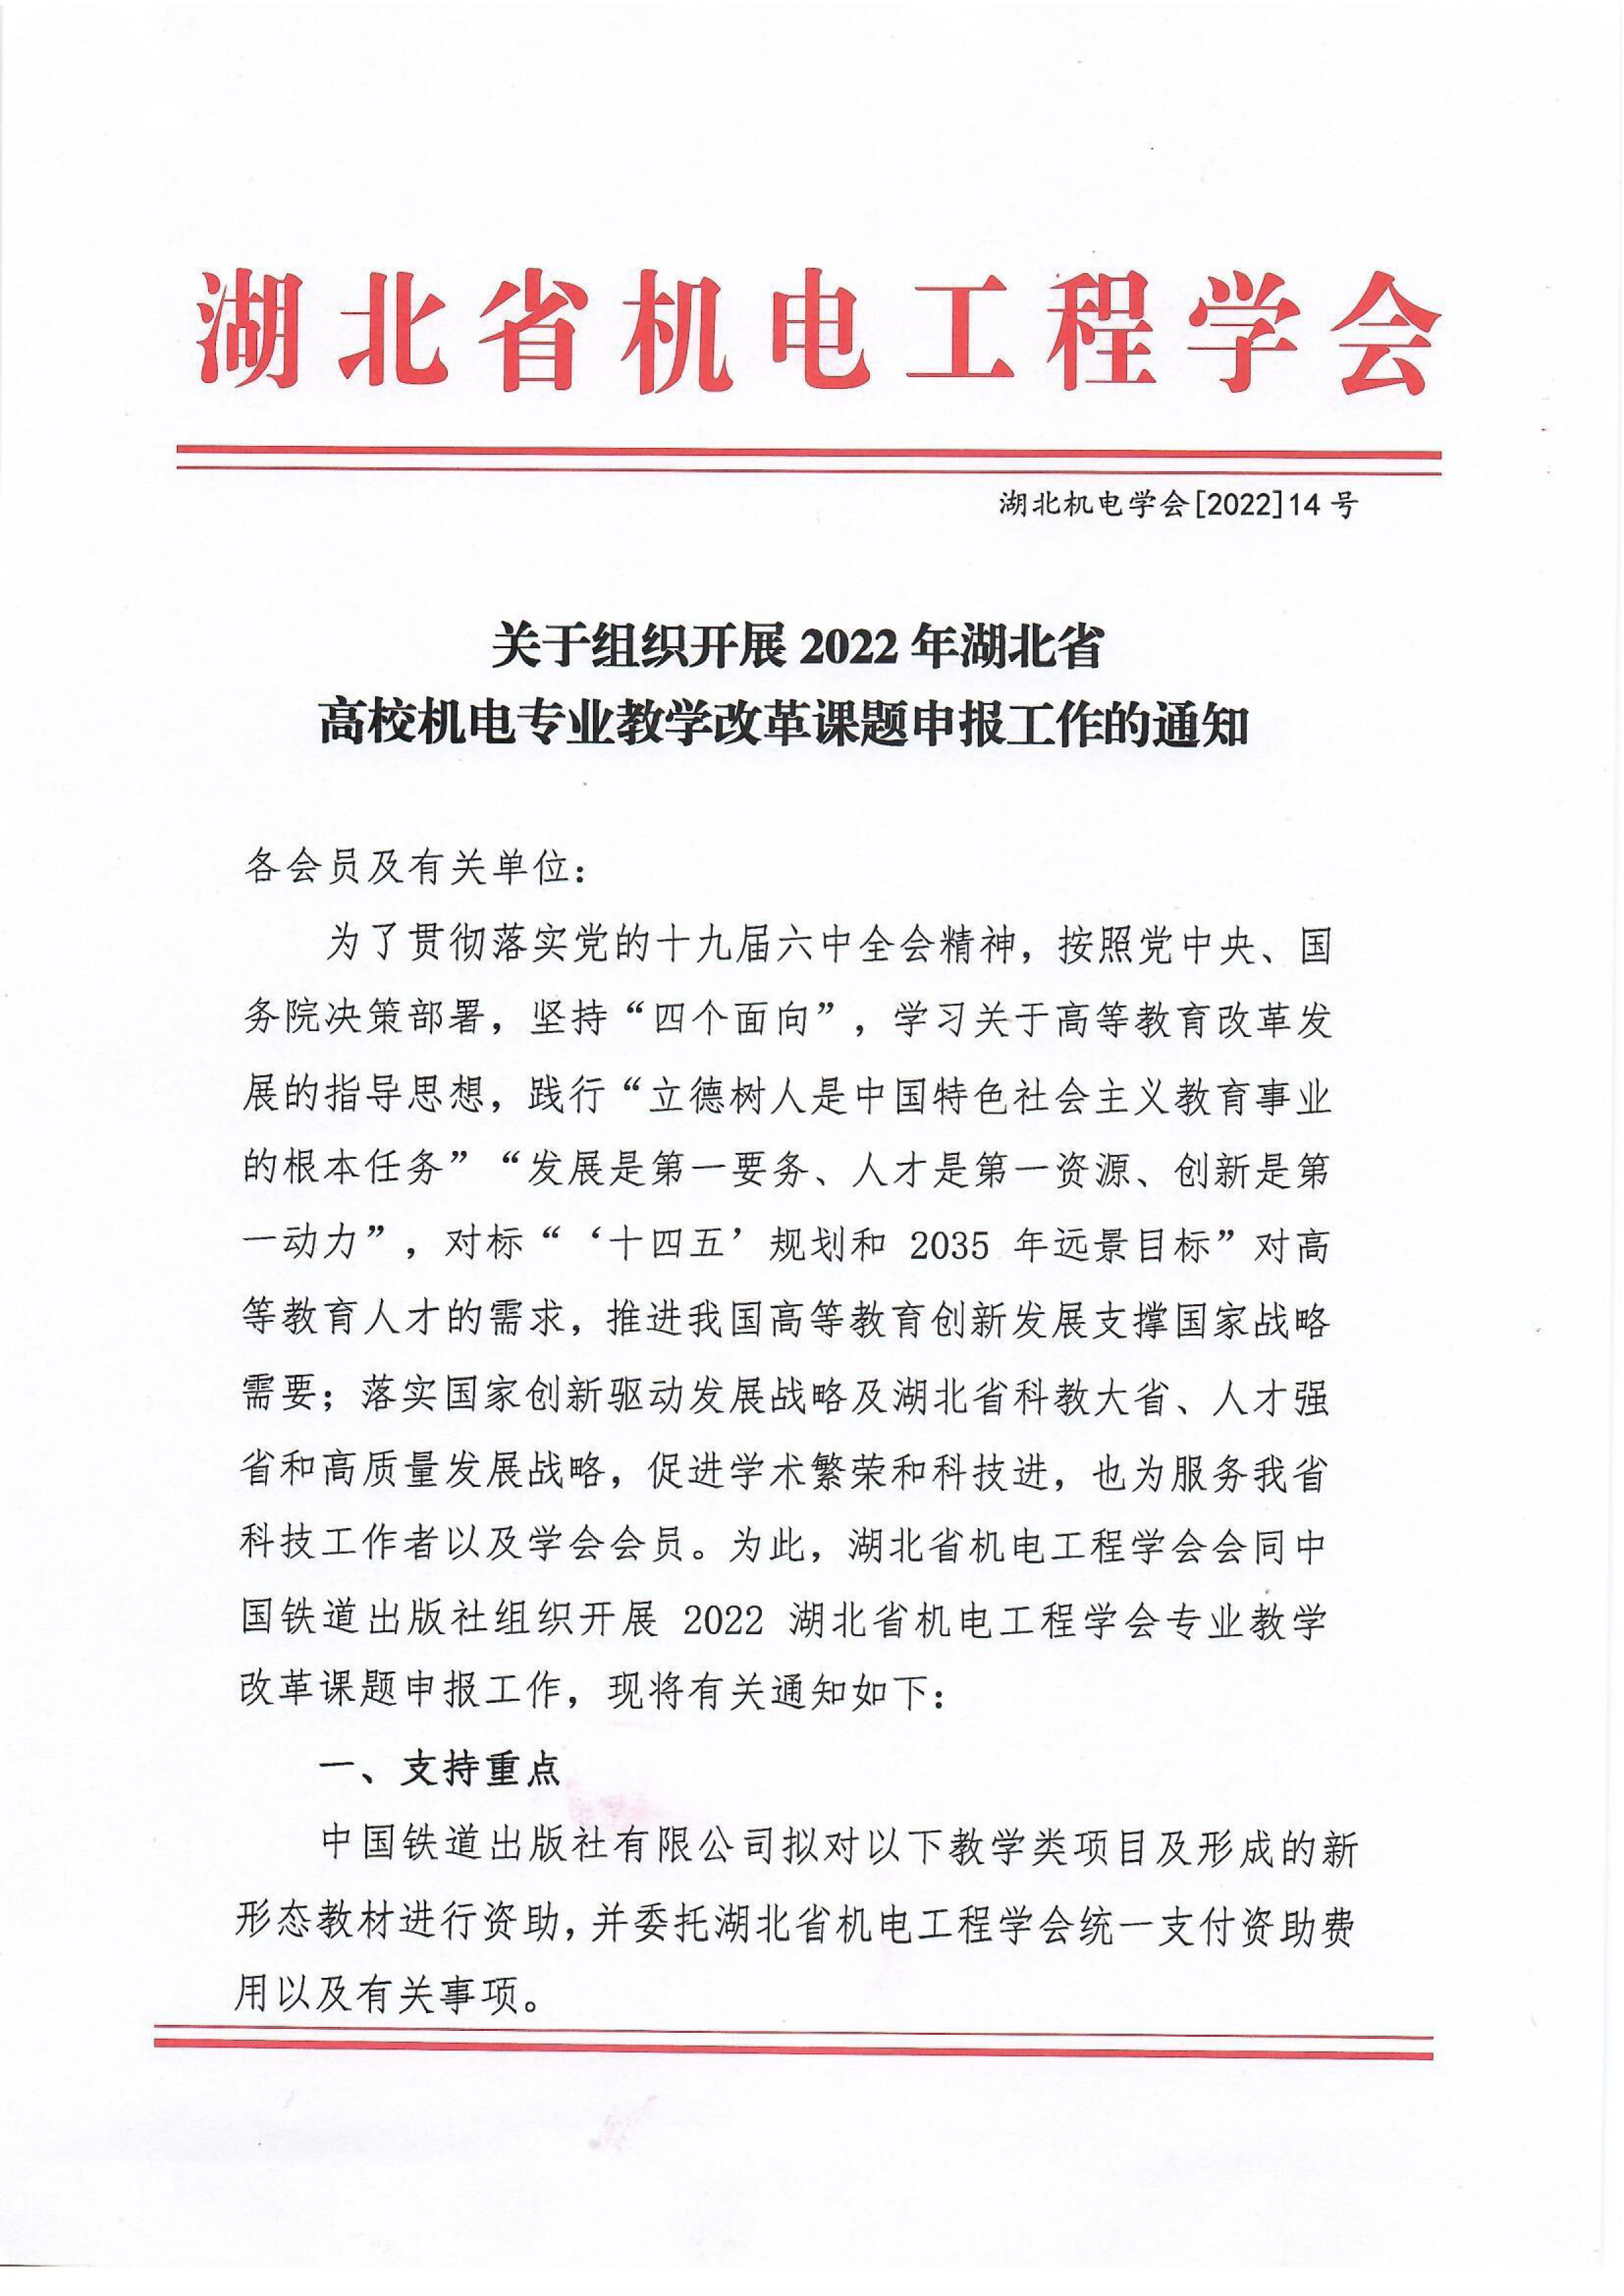 关于组织开展2022年湖北省 高校机电专业教学改革课题申报工作的通知